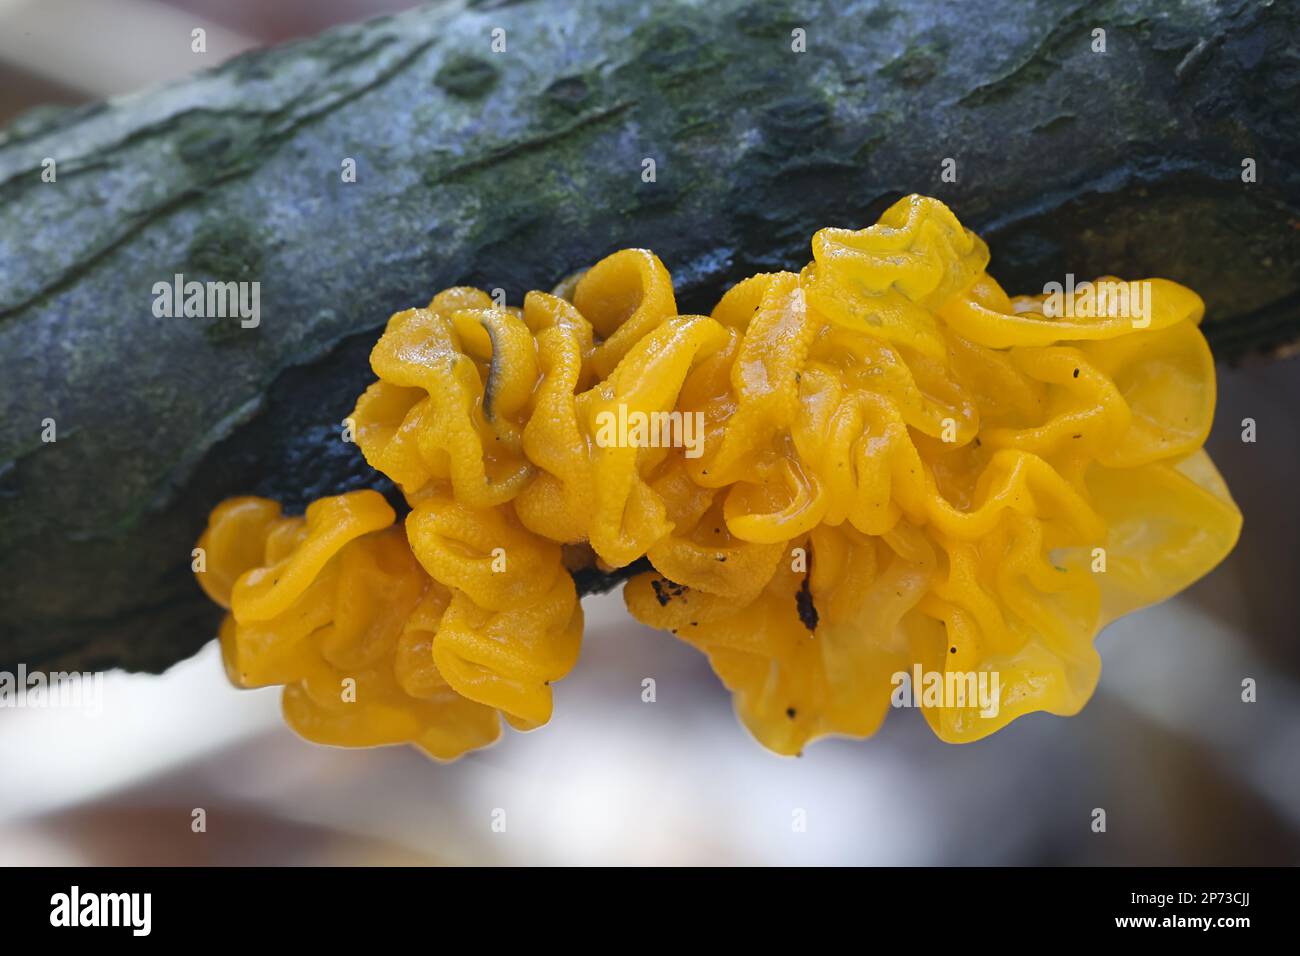 Tremella mesenterica, connue sous le nom de cerveau jaune, champignon de gelée dorée, beurre de tremble jaune ou de sorcières, champignon sauvage de Finlande Banque D'Images